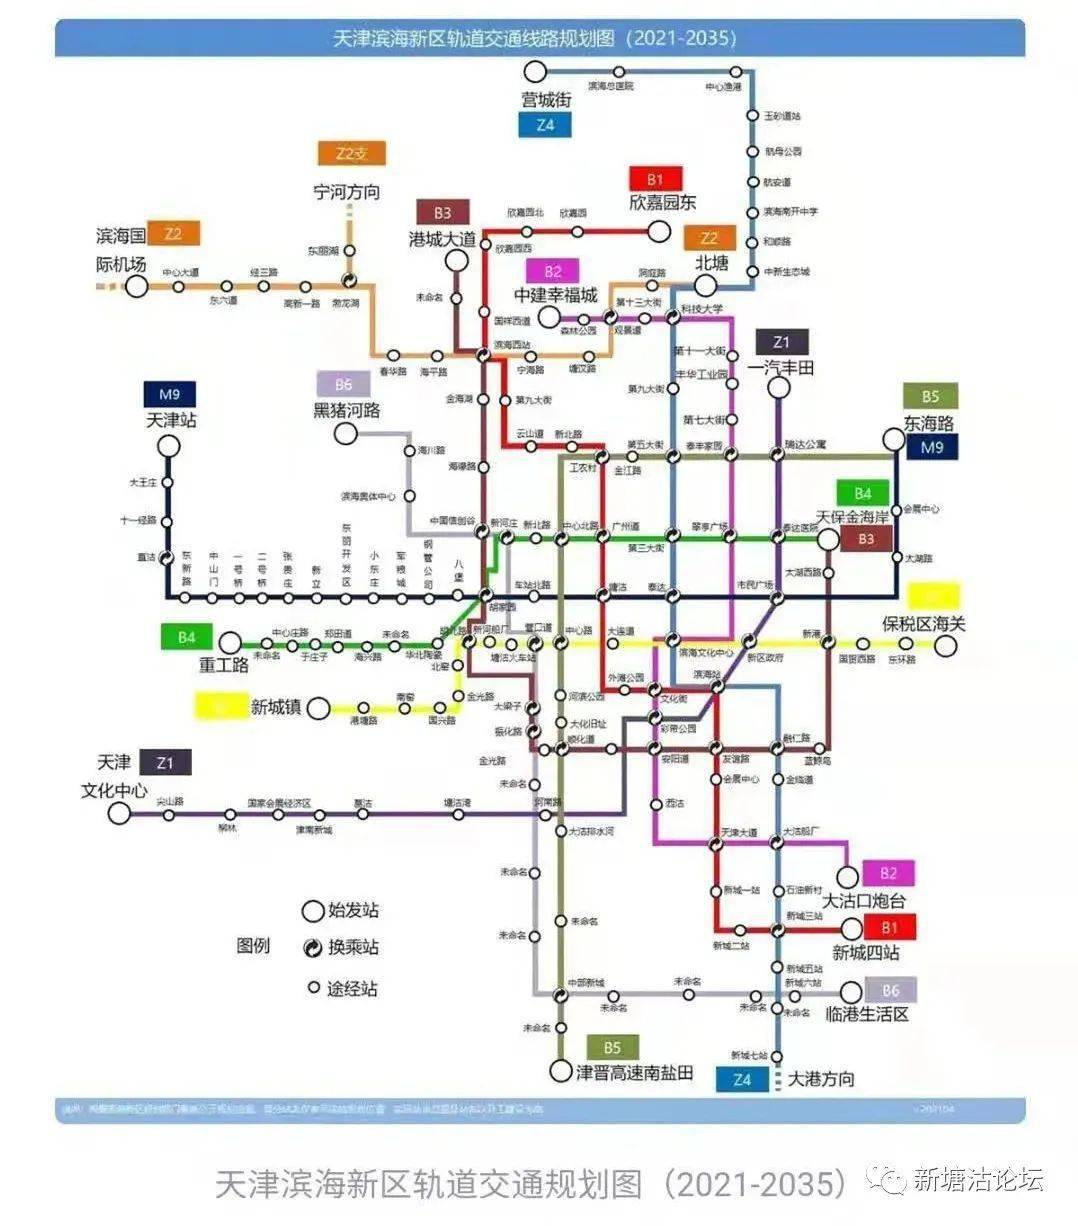 塘沽b2地铁线路规划图片